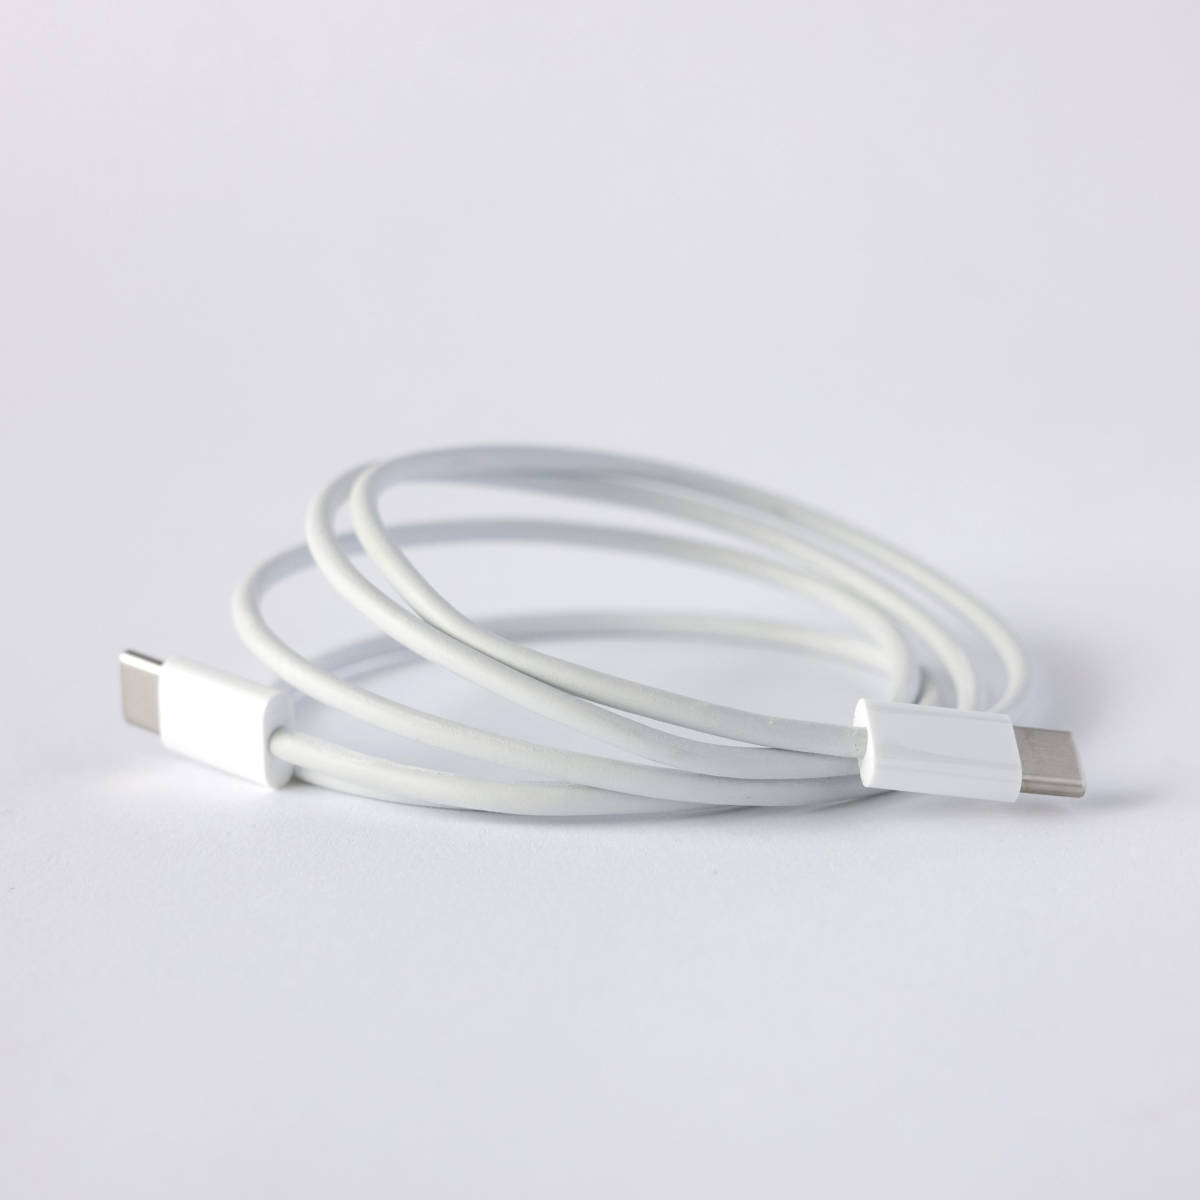 apple アップル 純正 USB-C Charge Cable 充電ケーブル 1m【美品】MUF72FE/A 純正 アクセサリー_画像3